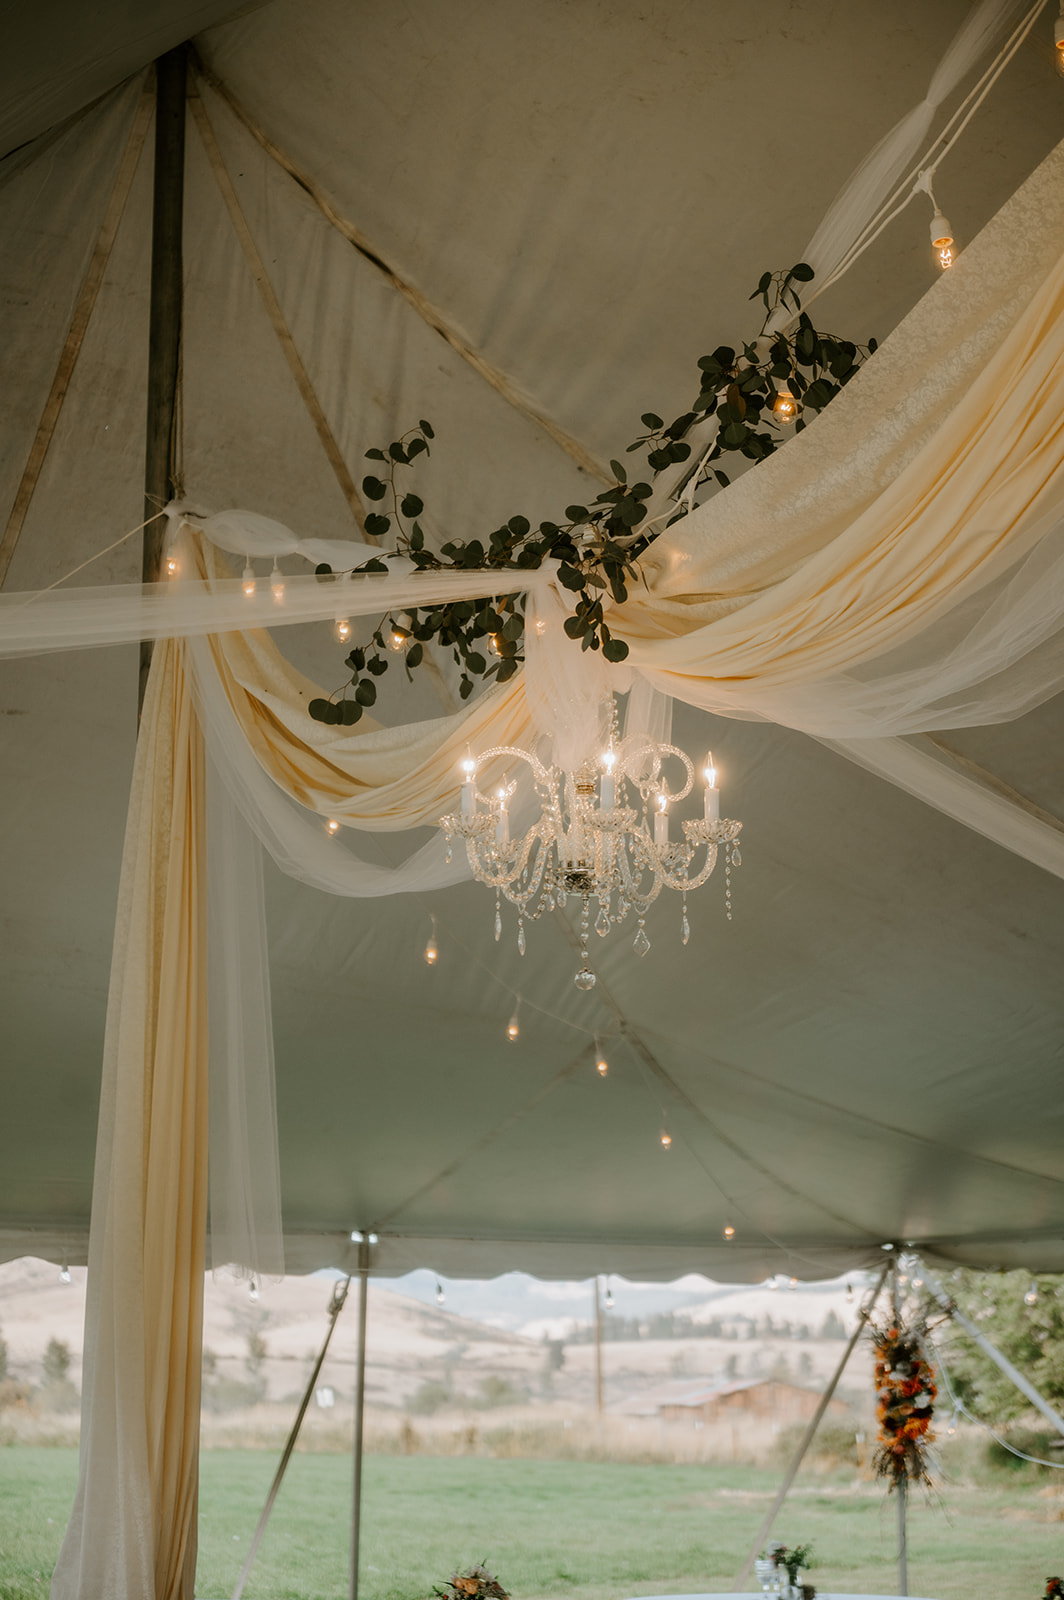 Chandelier in wedding tent 